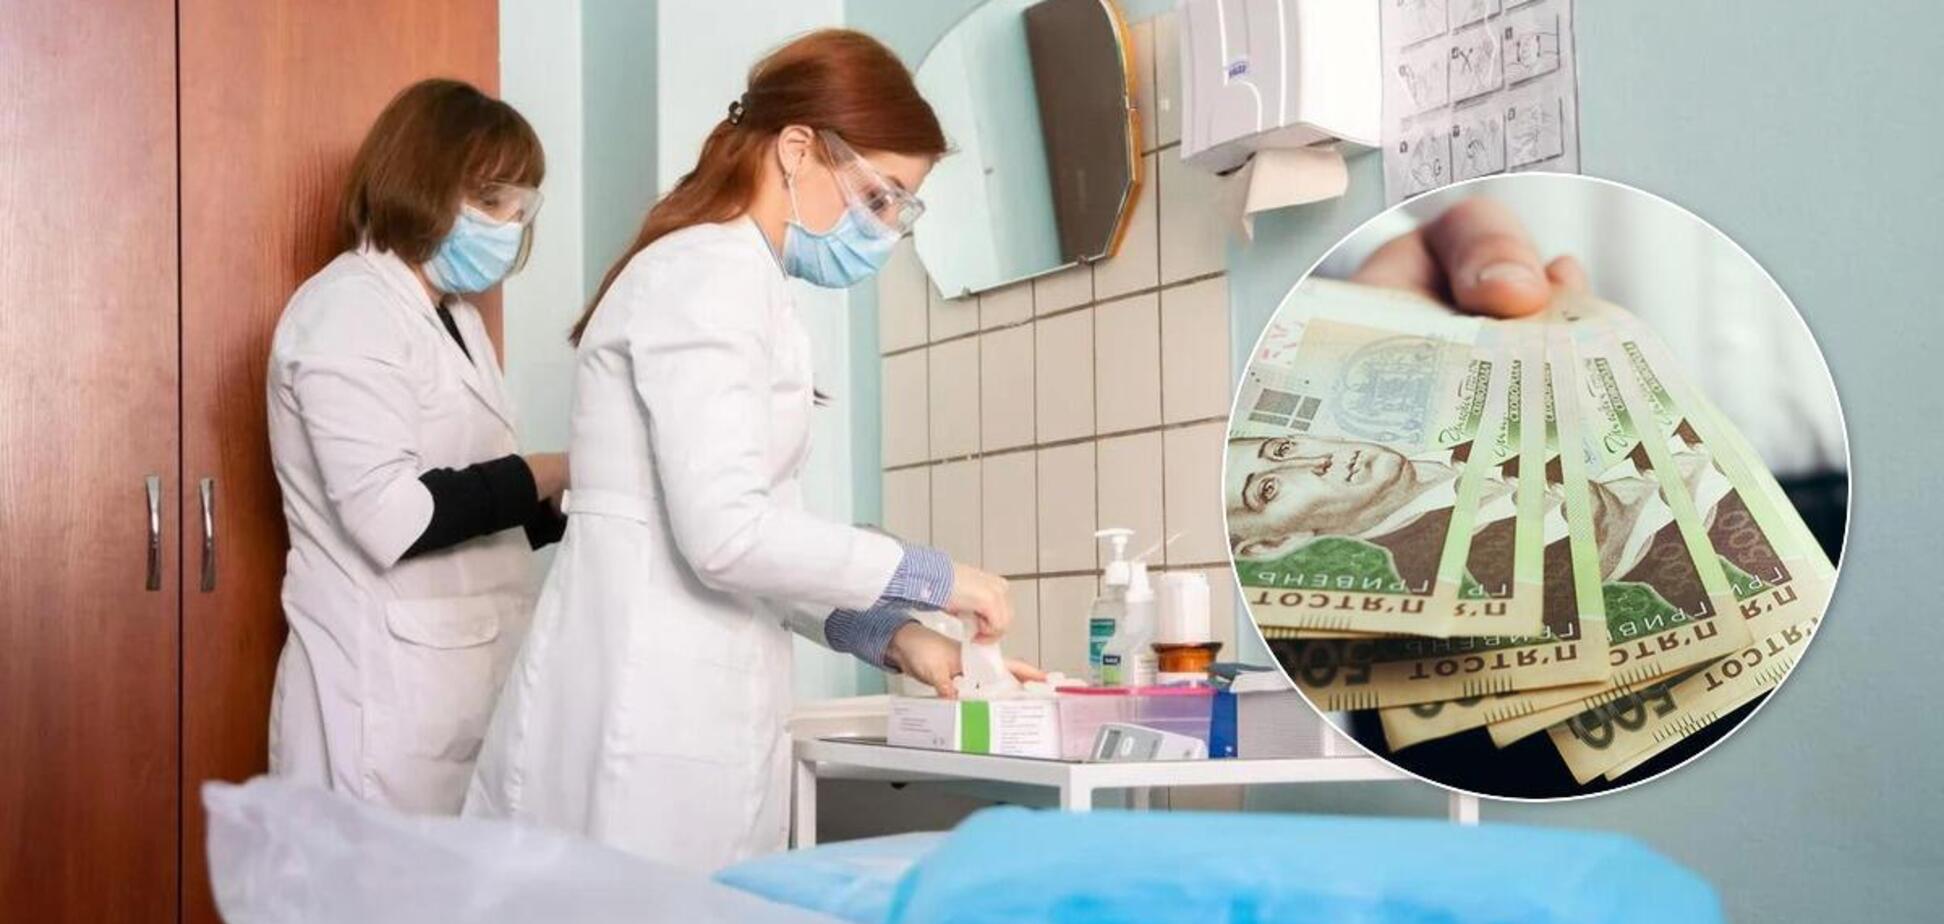 Усім на нас начхати, – українська медсестра про зарплату в 4200 грн